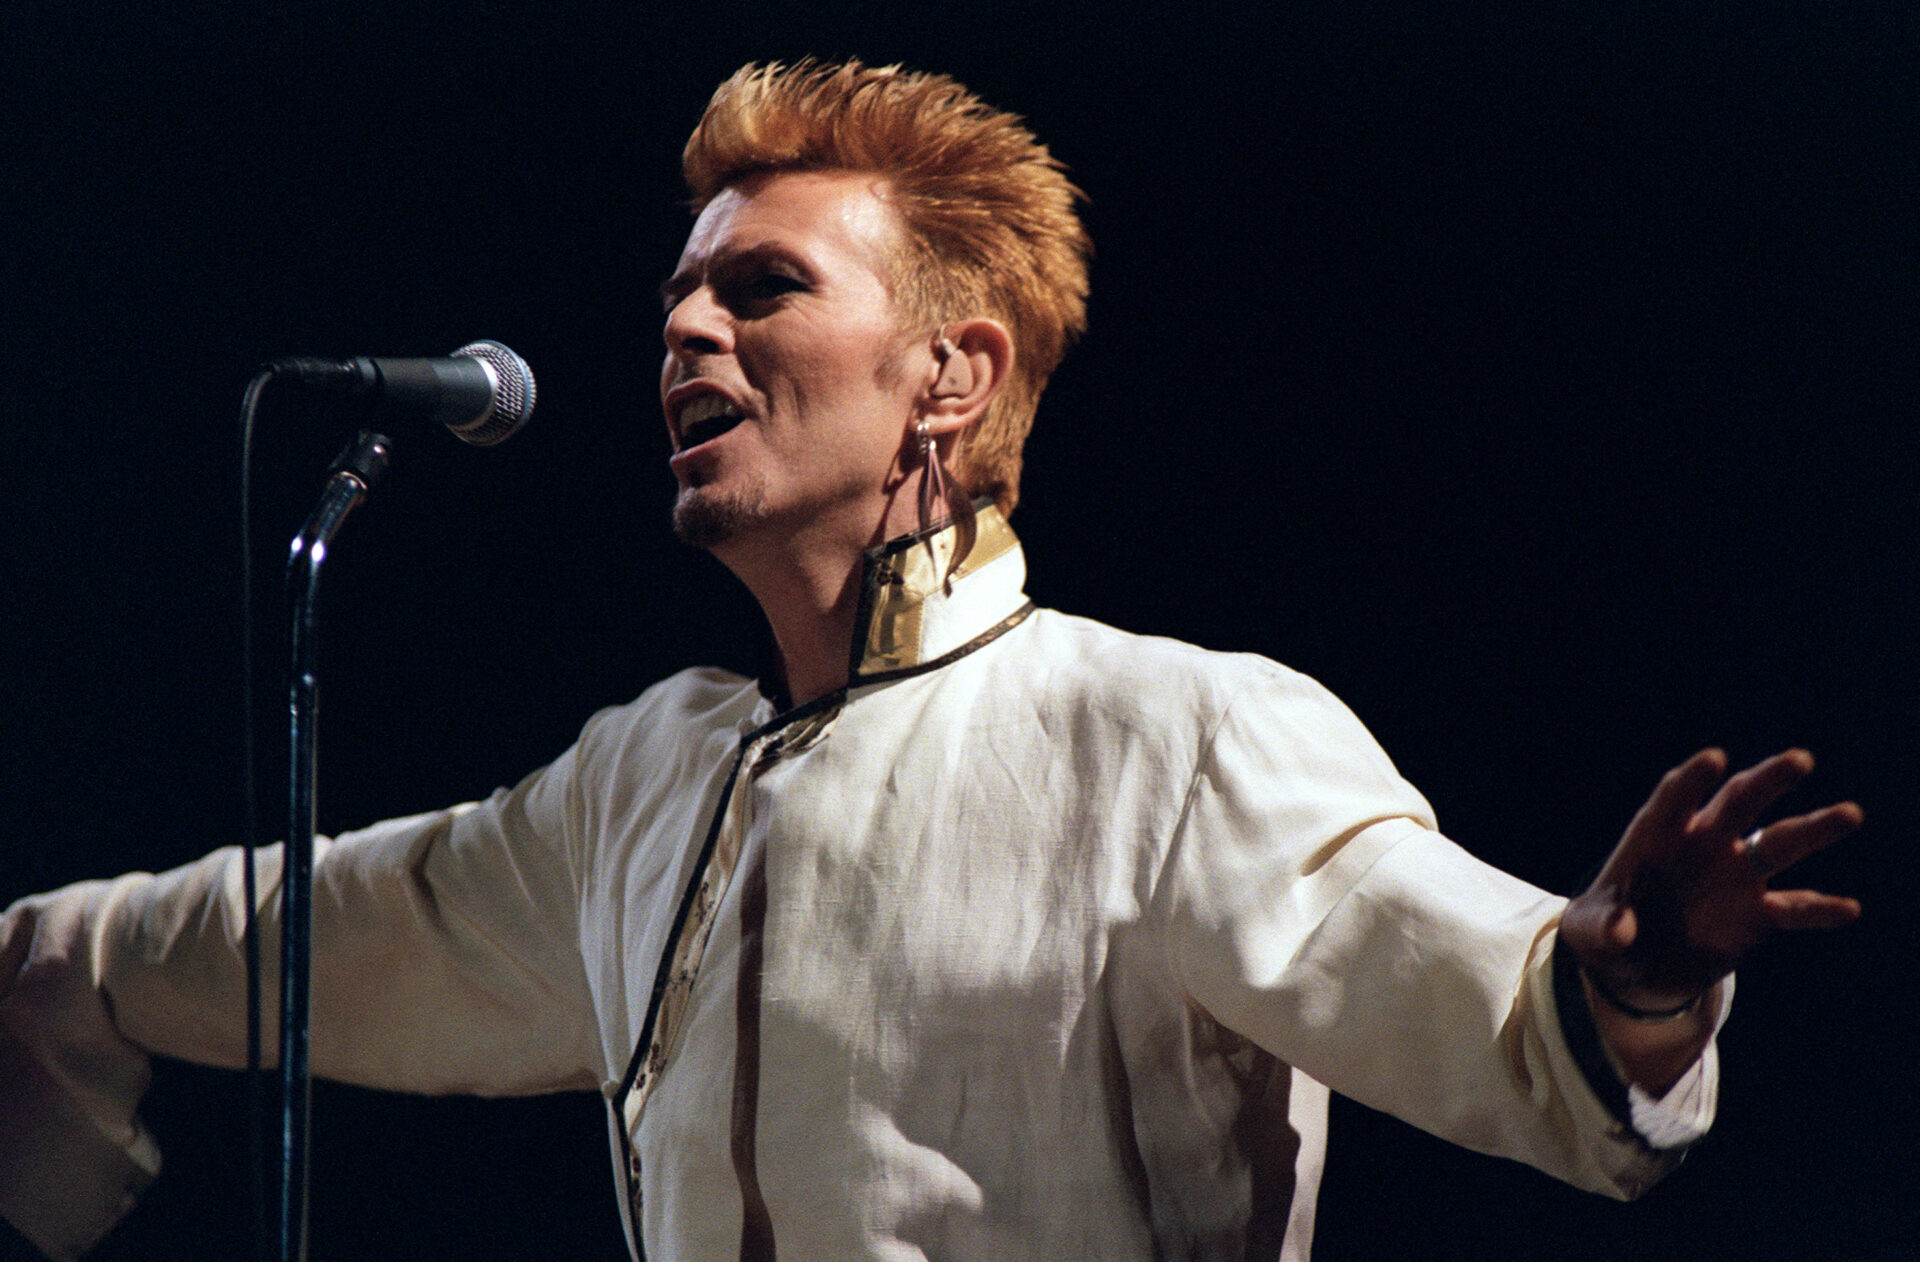 Compran cuadro de David Bowie por cuatro dólares… vale más de 18 mil